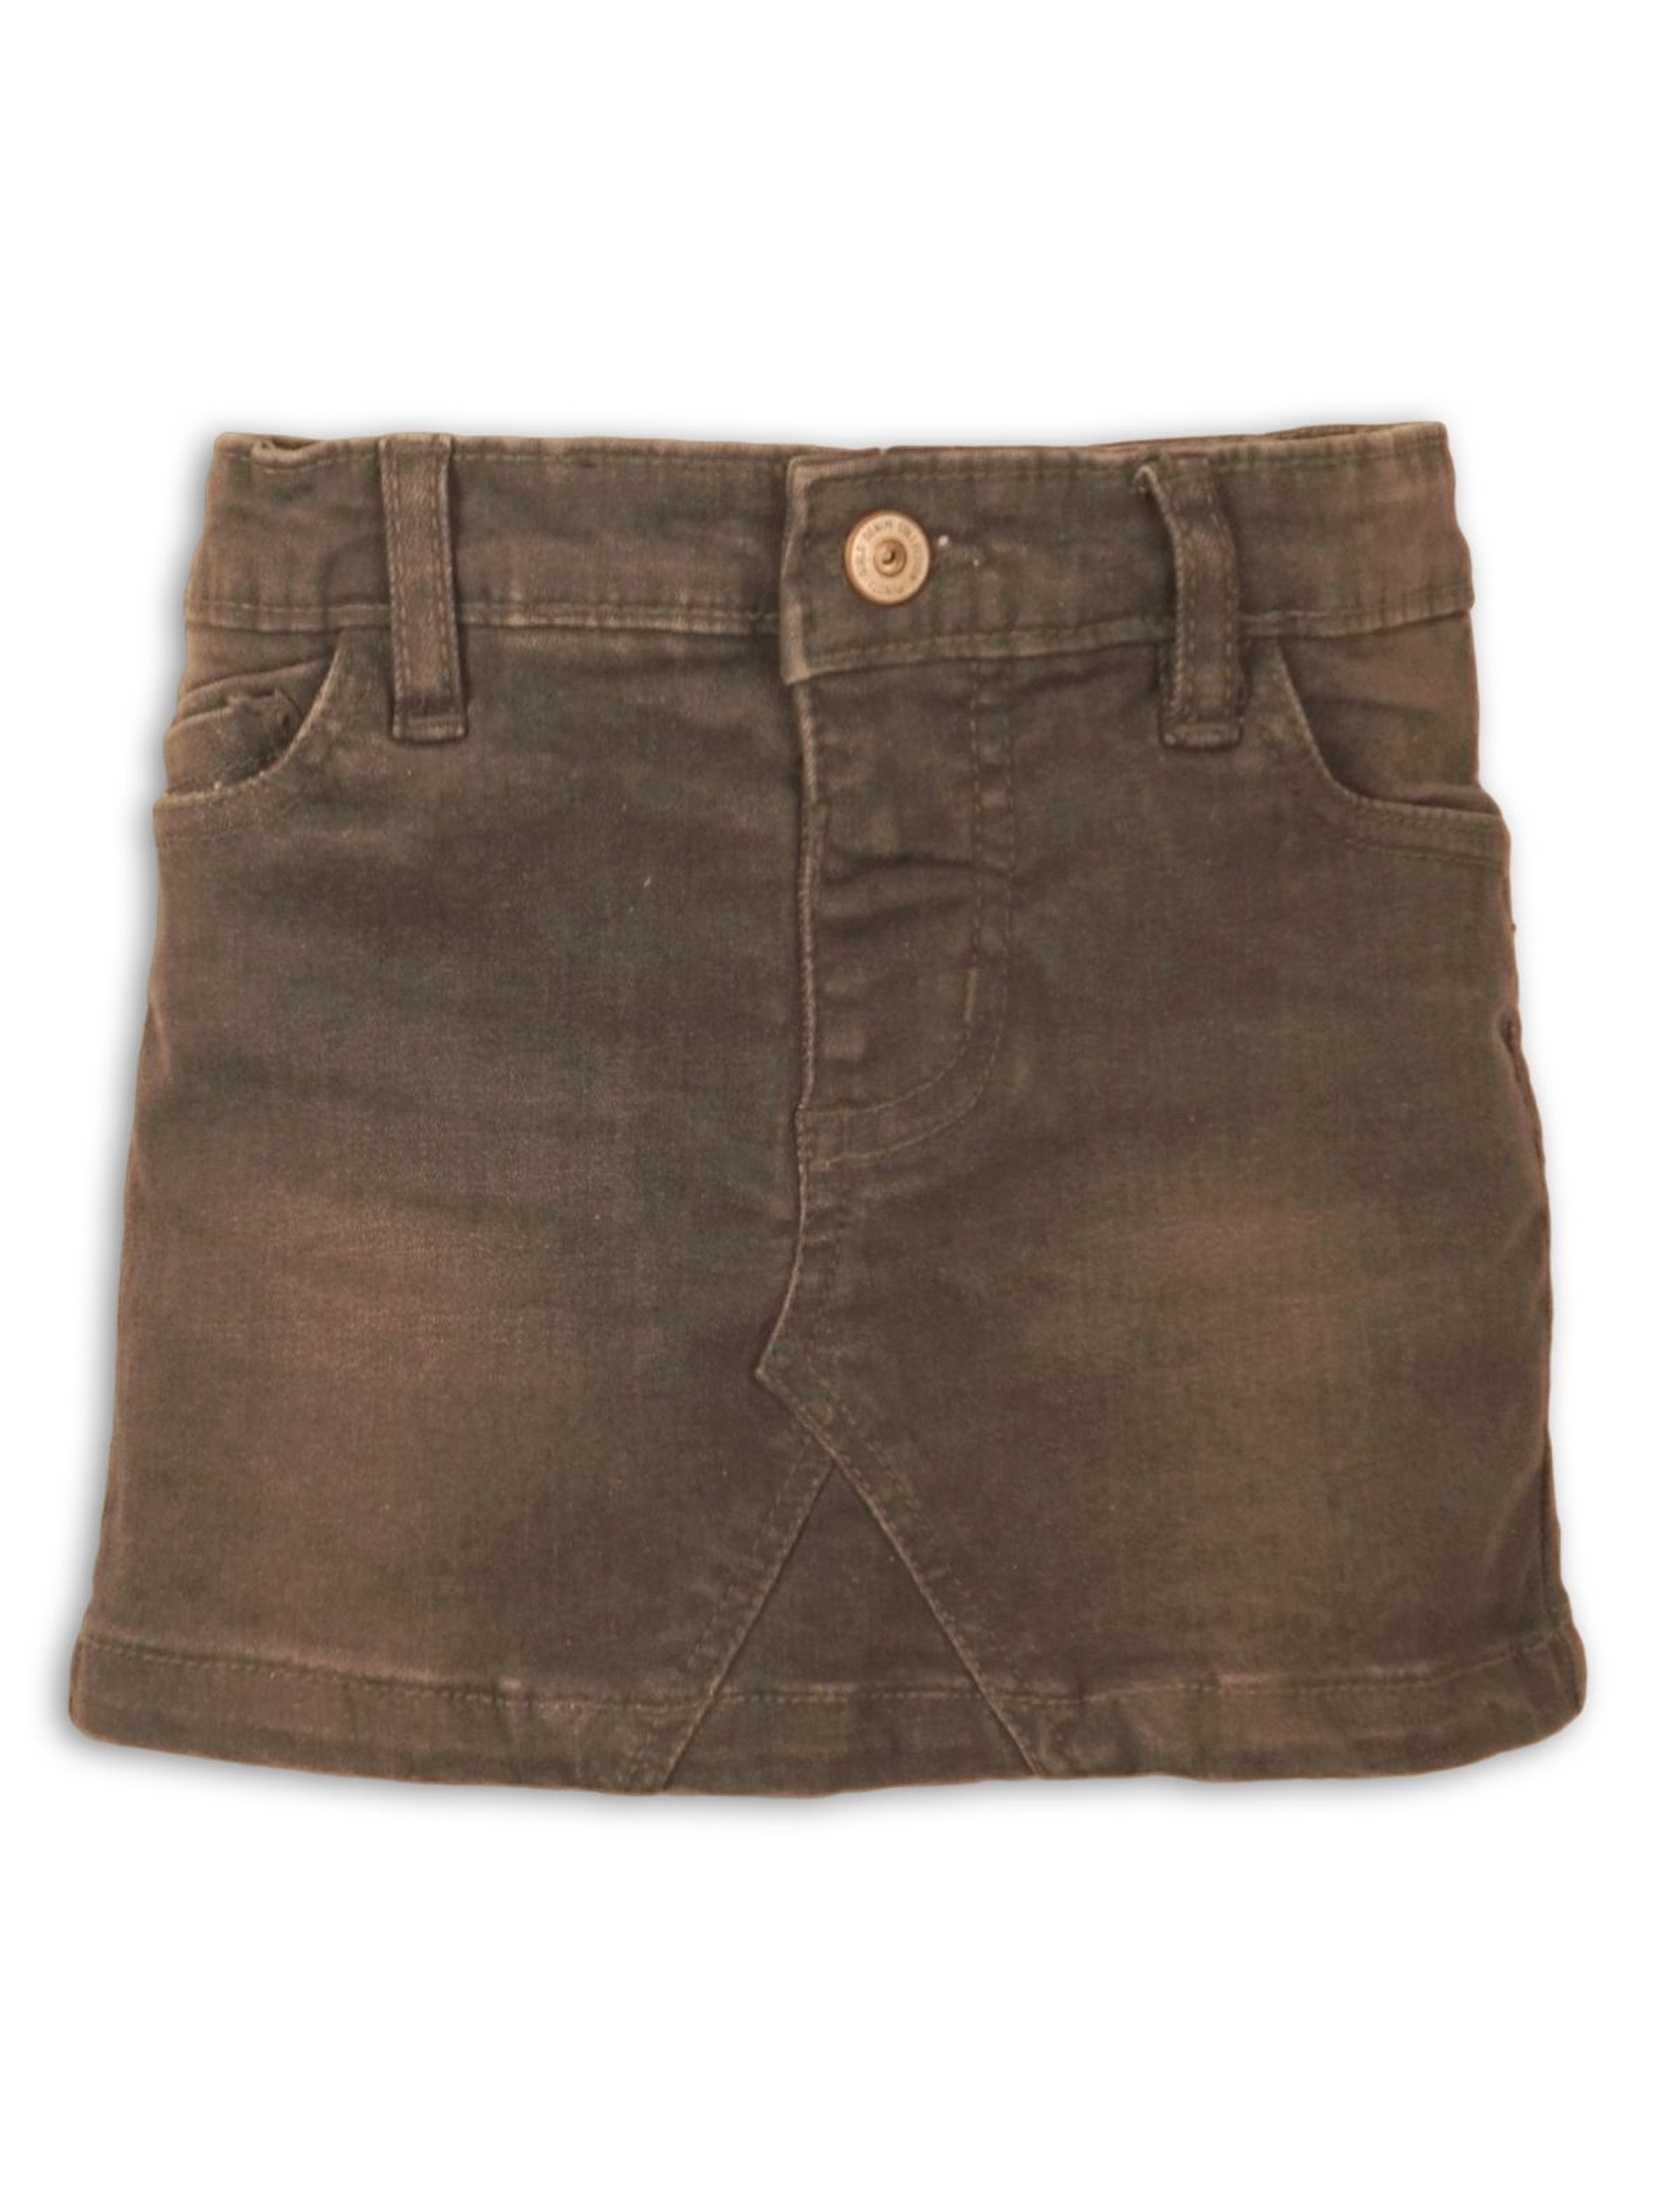 Spódnica jeansowa dziewczęca- brązowa